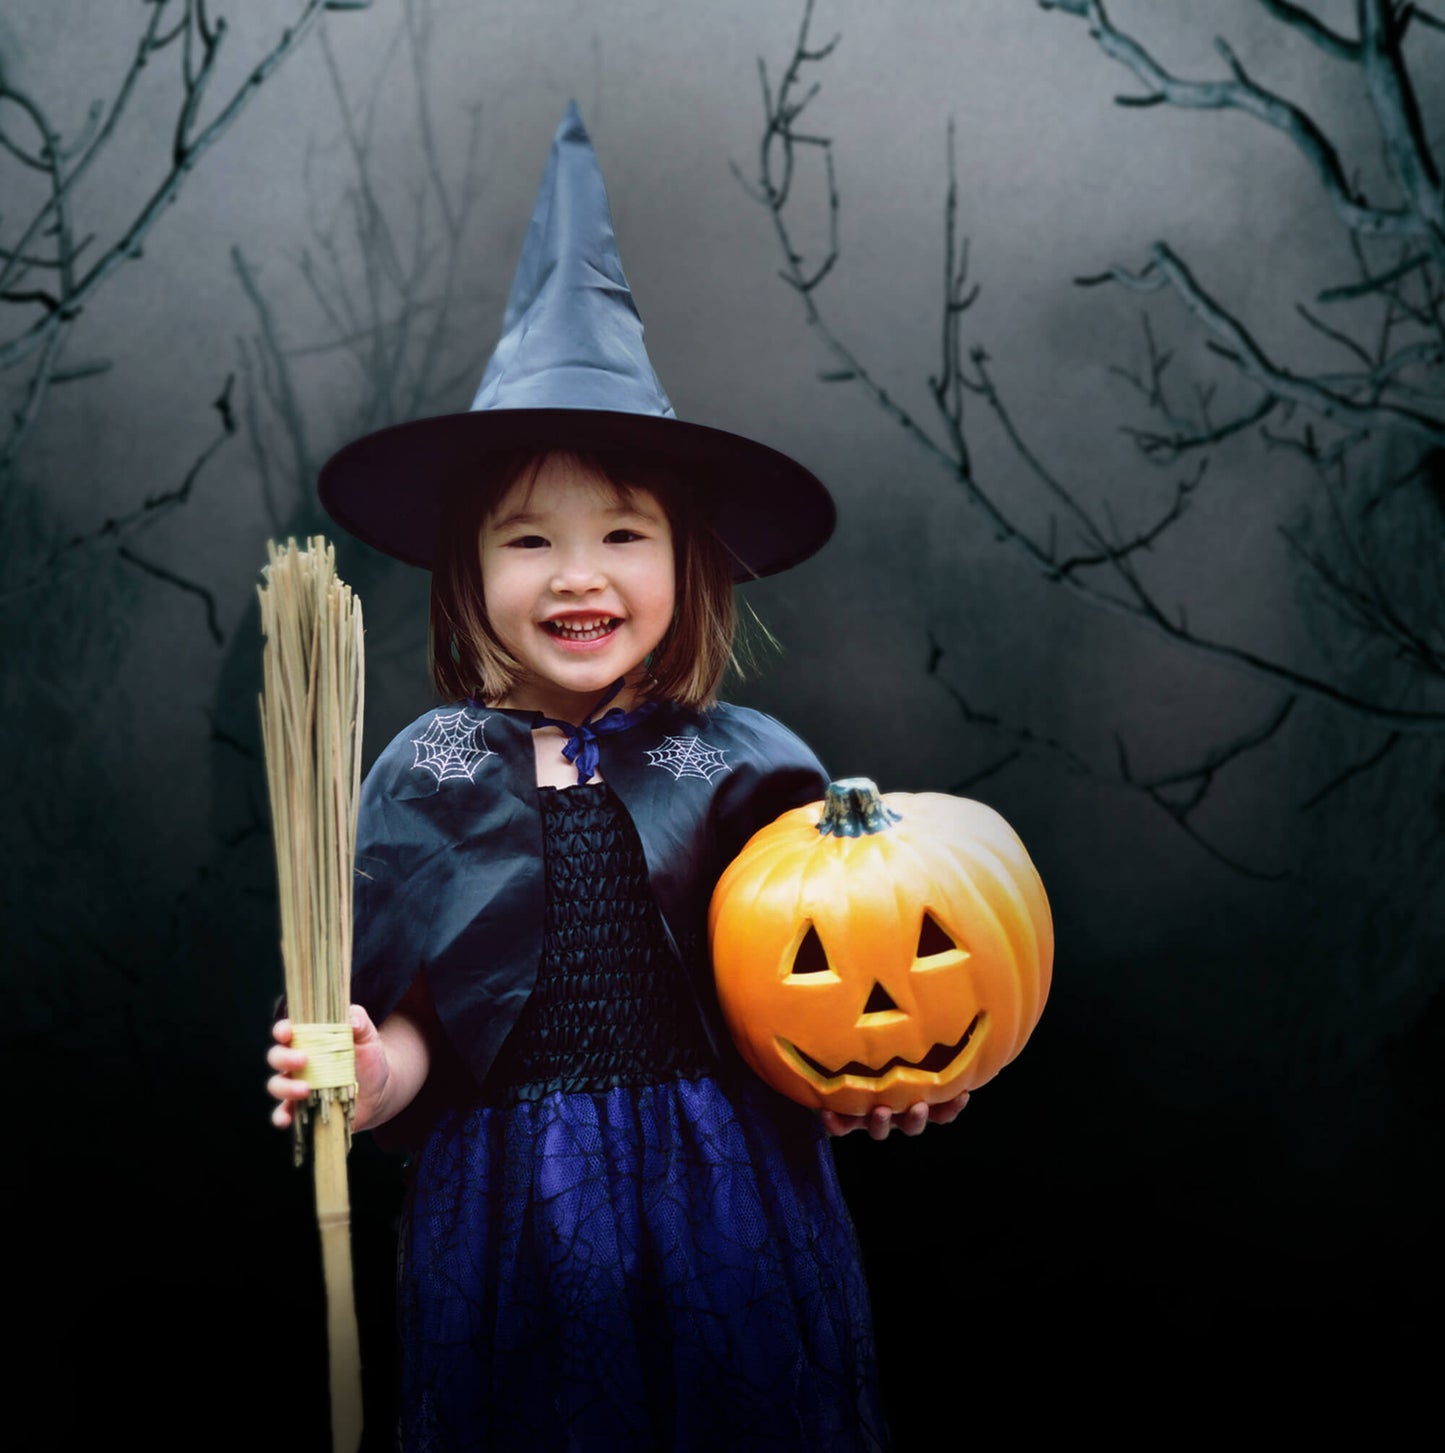 Spooky Tree Night Mist Halloween Backdrop M6-133 – Dbackdrop